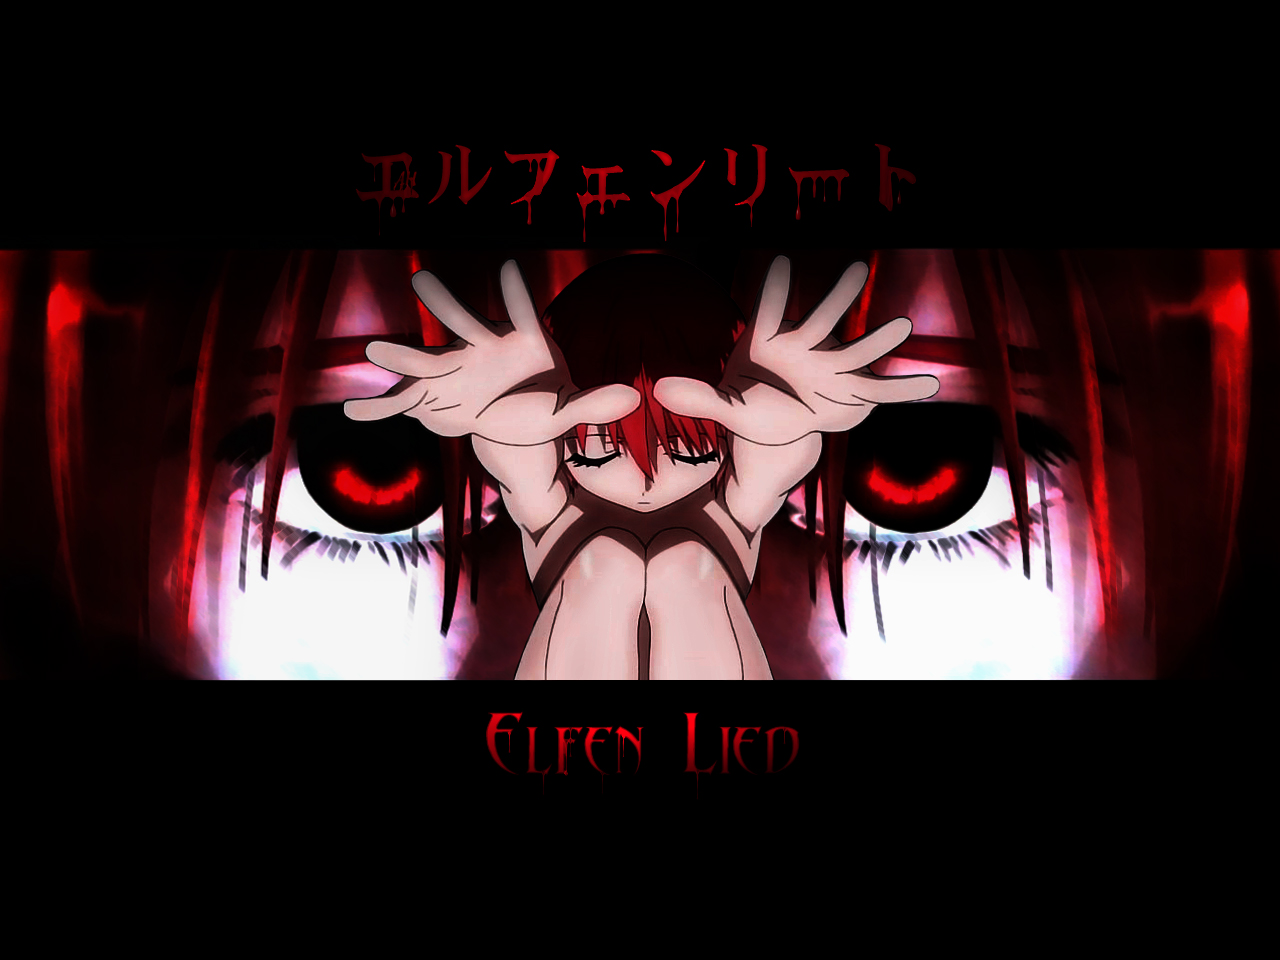 Eye Stare - Elfen Lied 9 Lucy , HD Wallpaper & Backgrounds